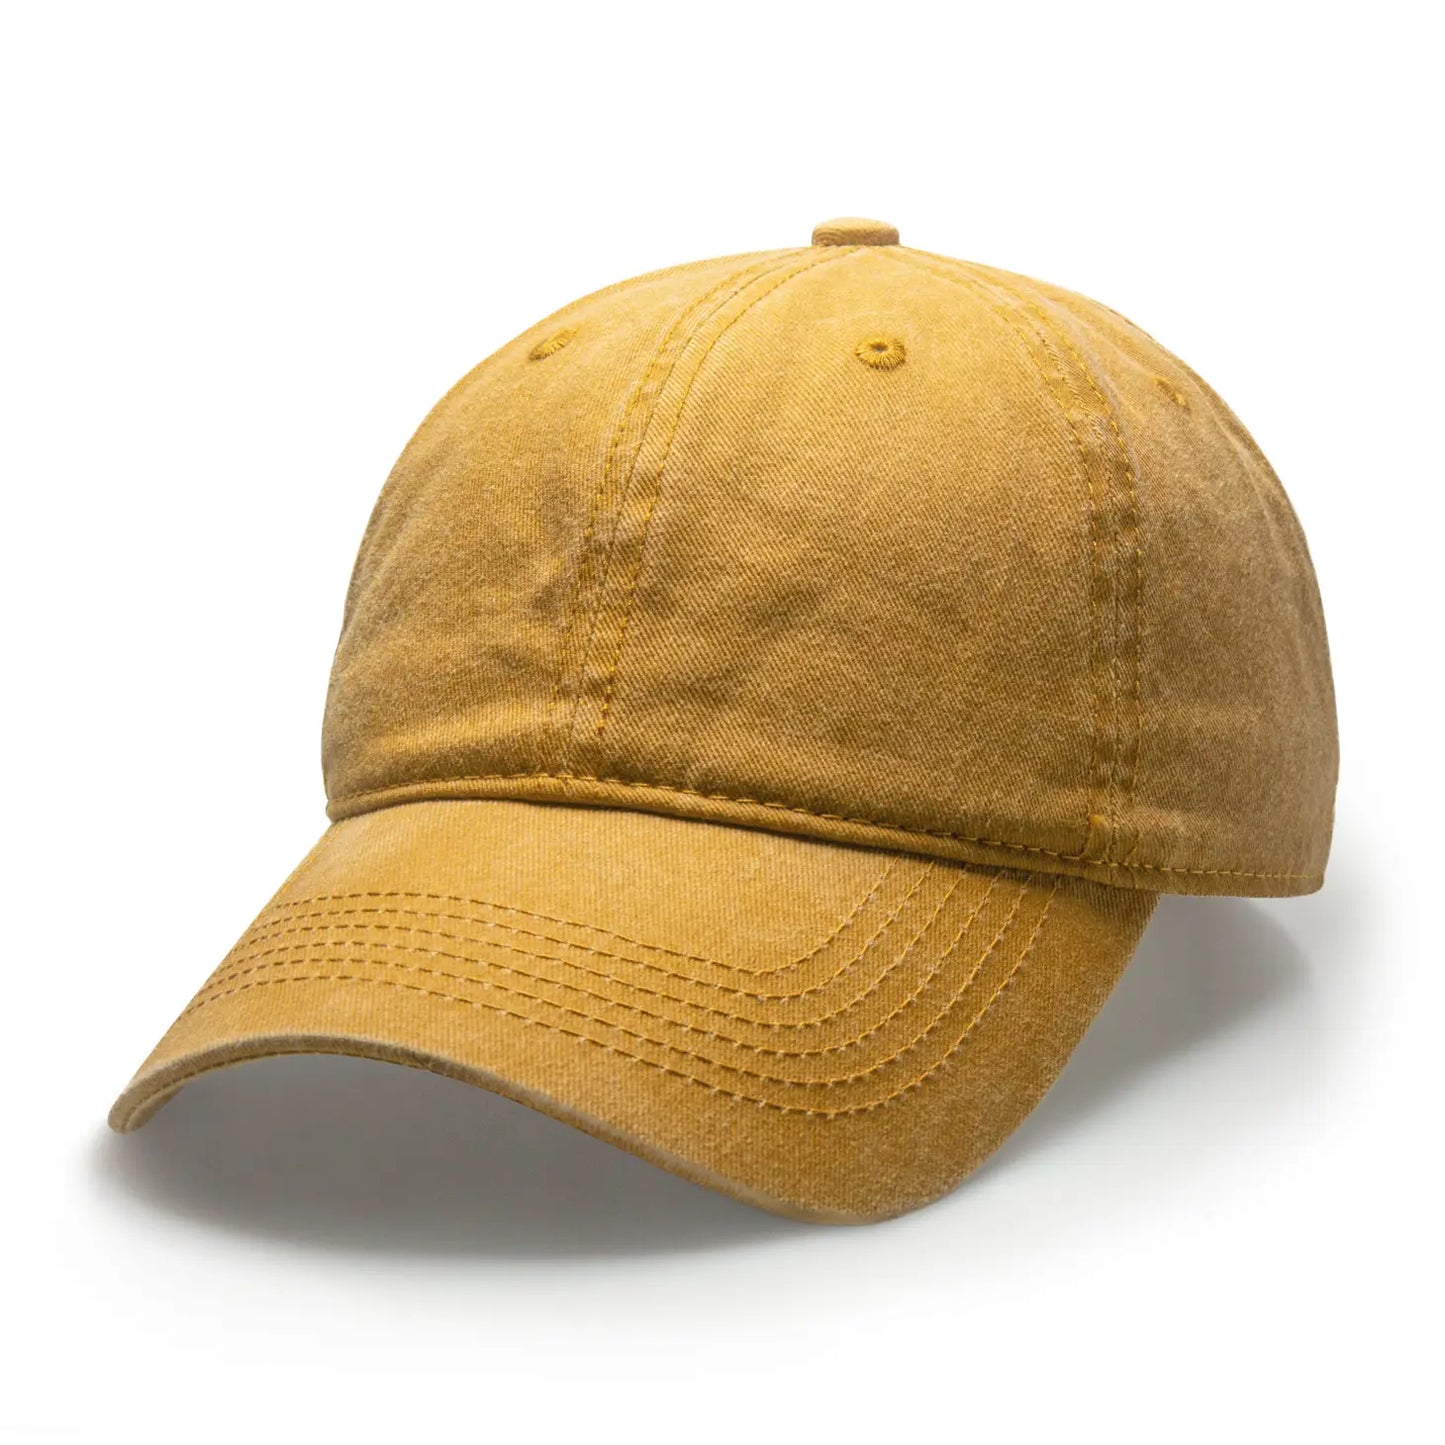 Vintage Twill Baseball Cap - Mustard